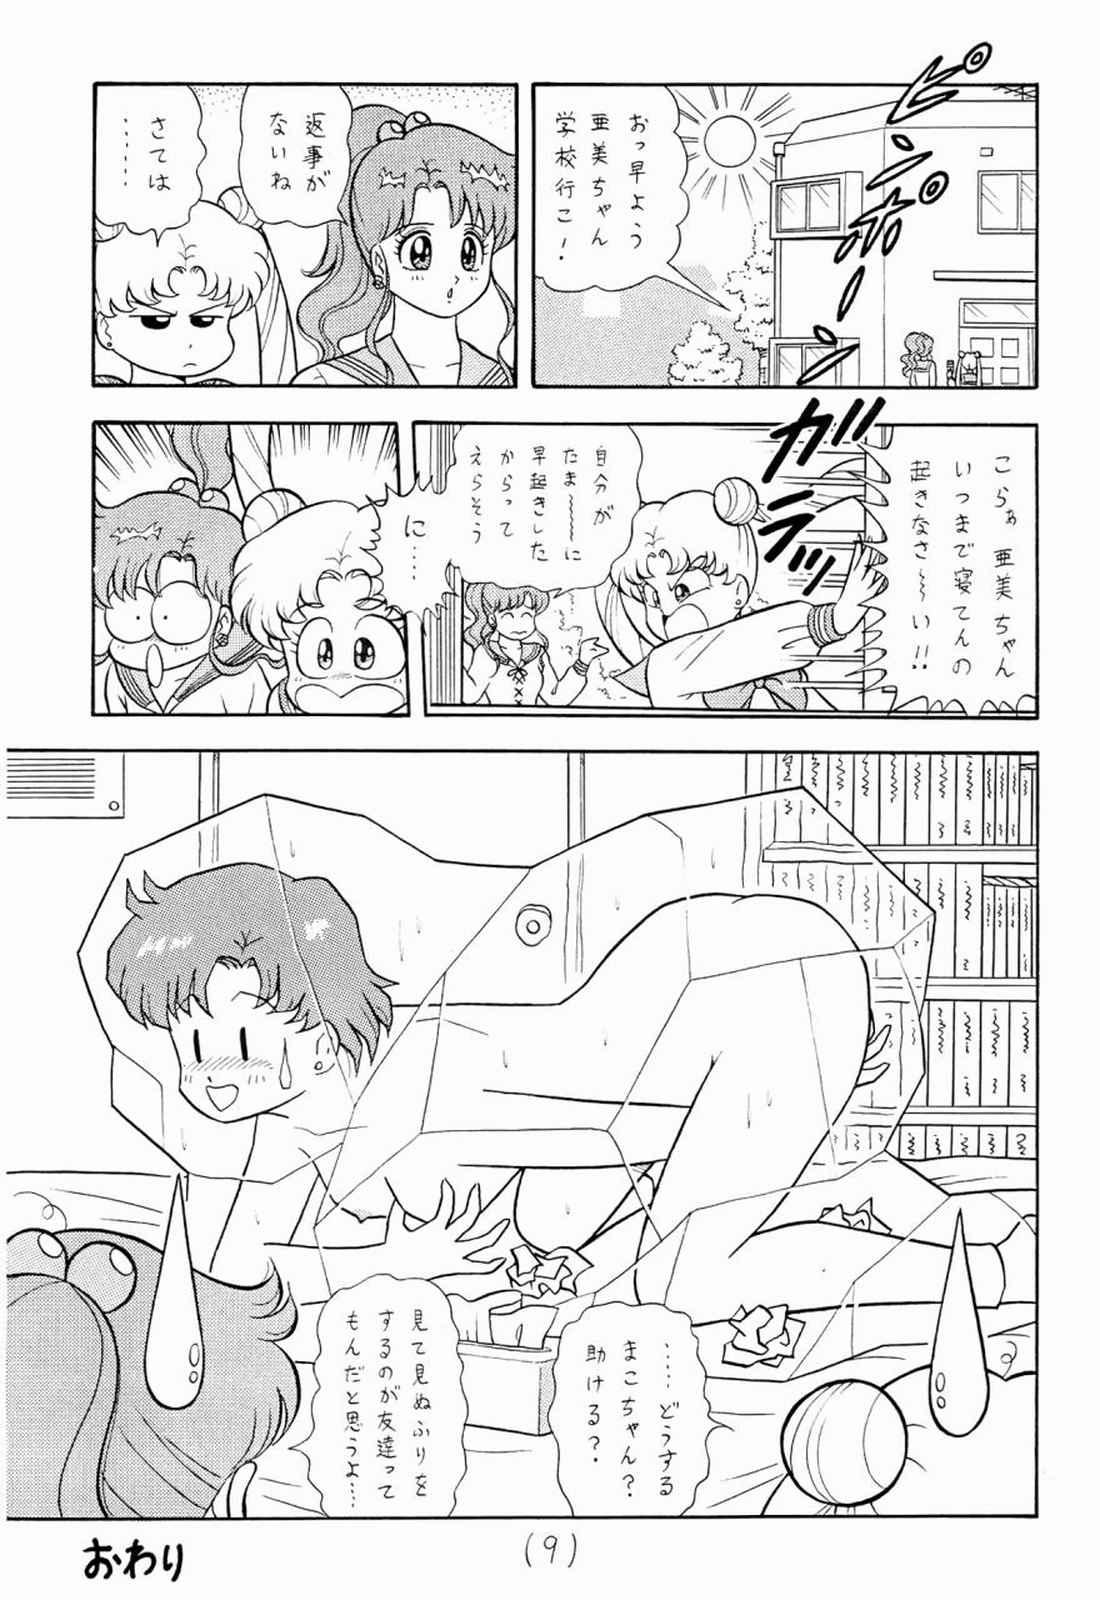 Gay Porn Mun Mun Princess 1 - Sailor moon Sapphicerotica - Page 9